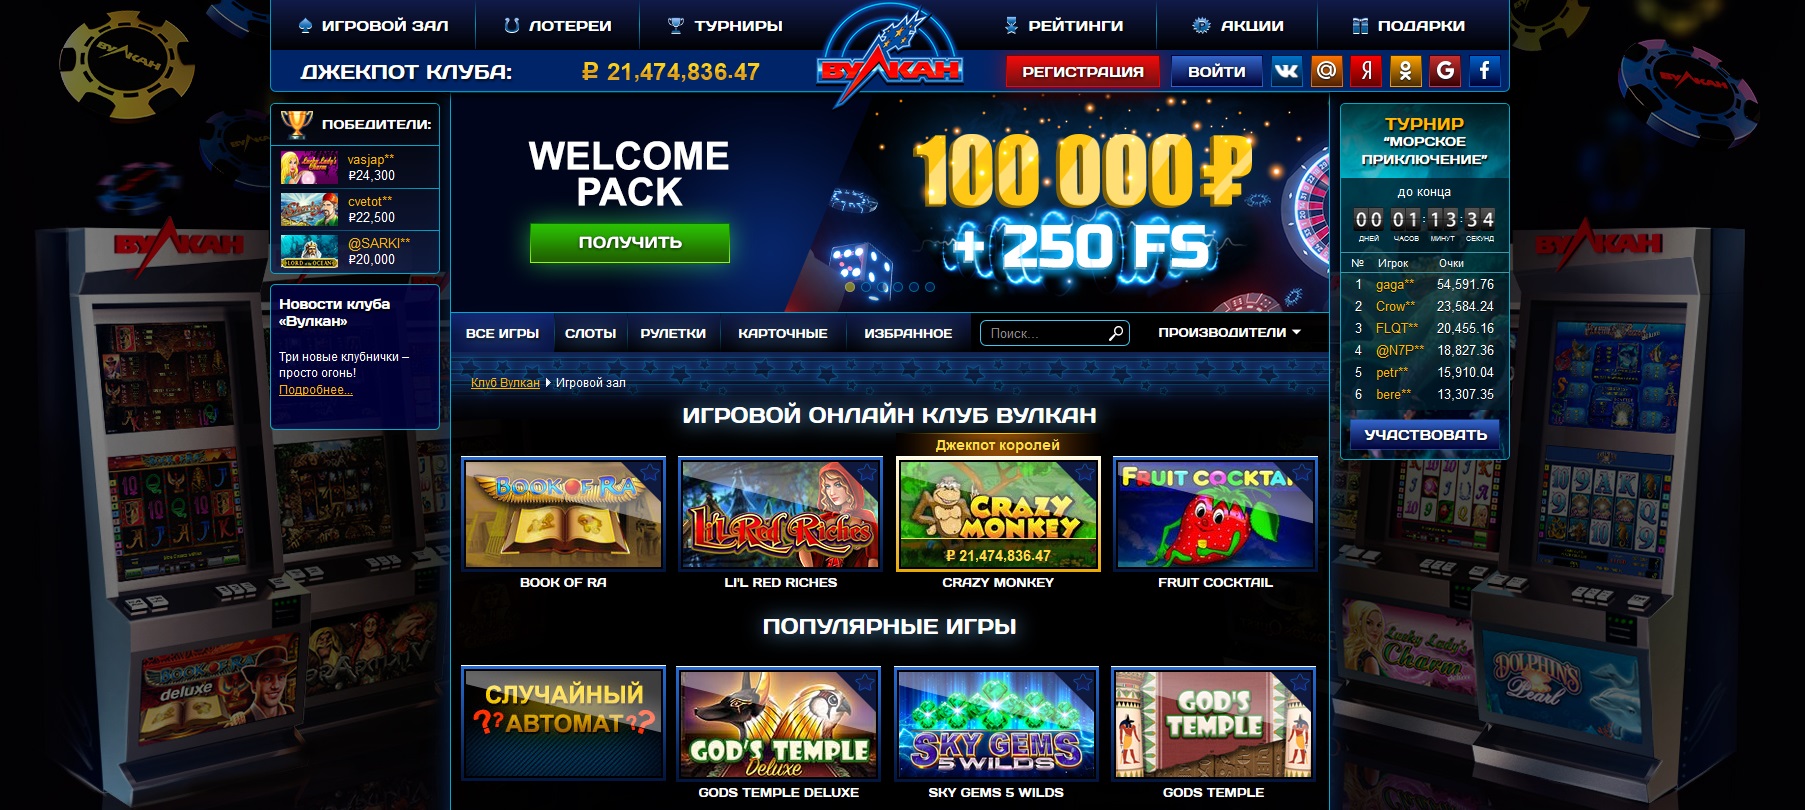 Акции от казино вулкан покер гри в онлайне